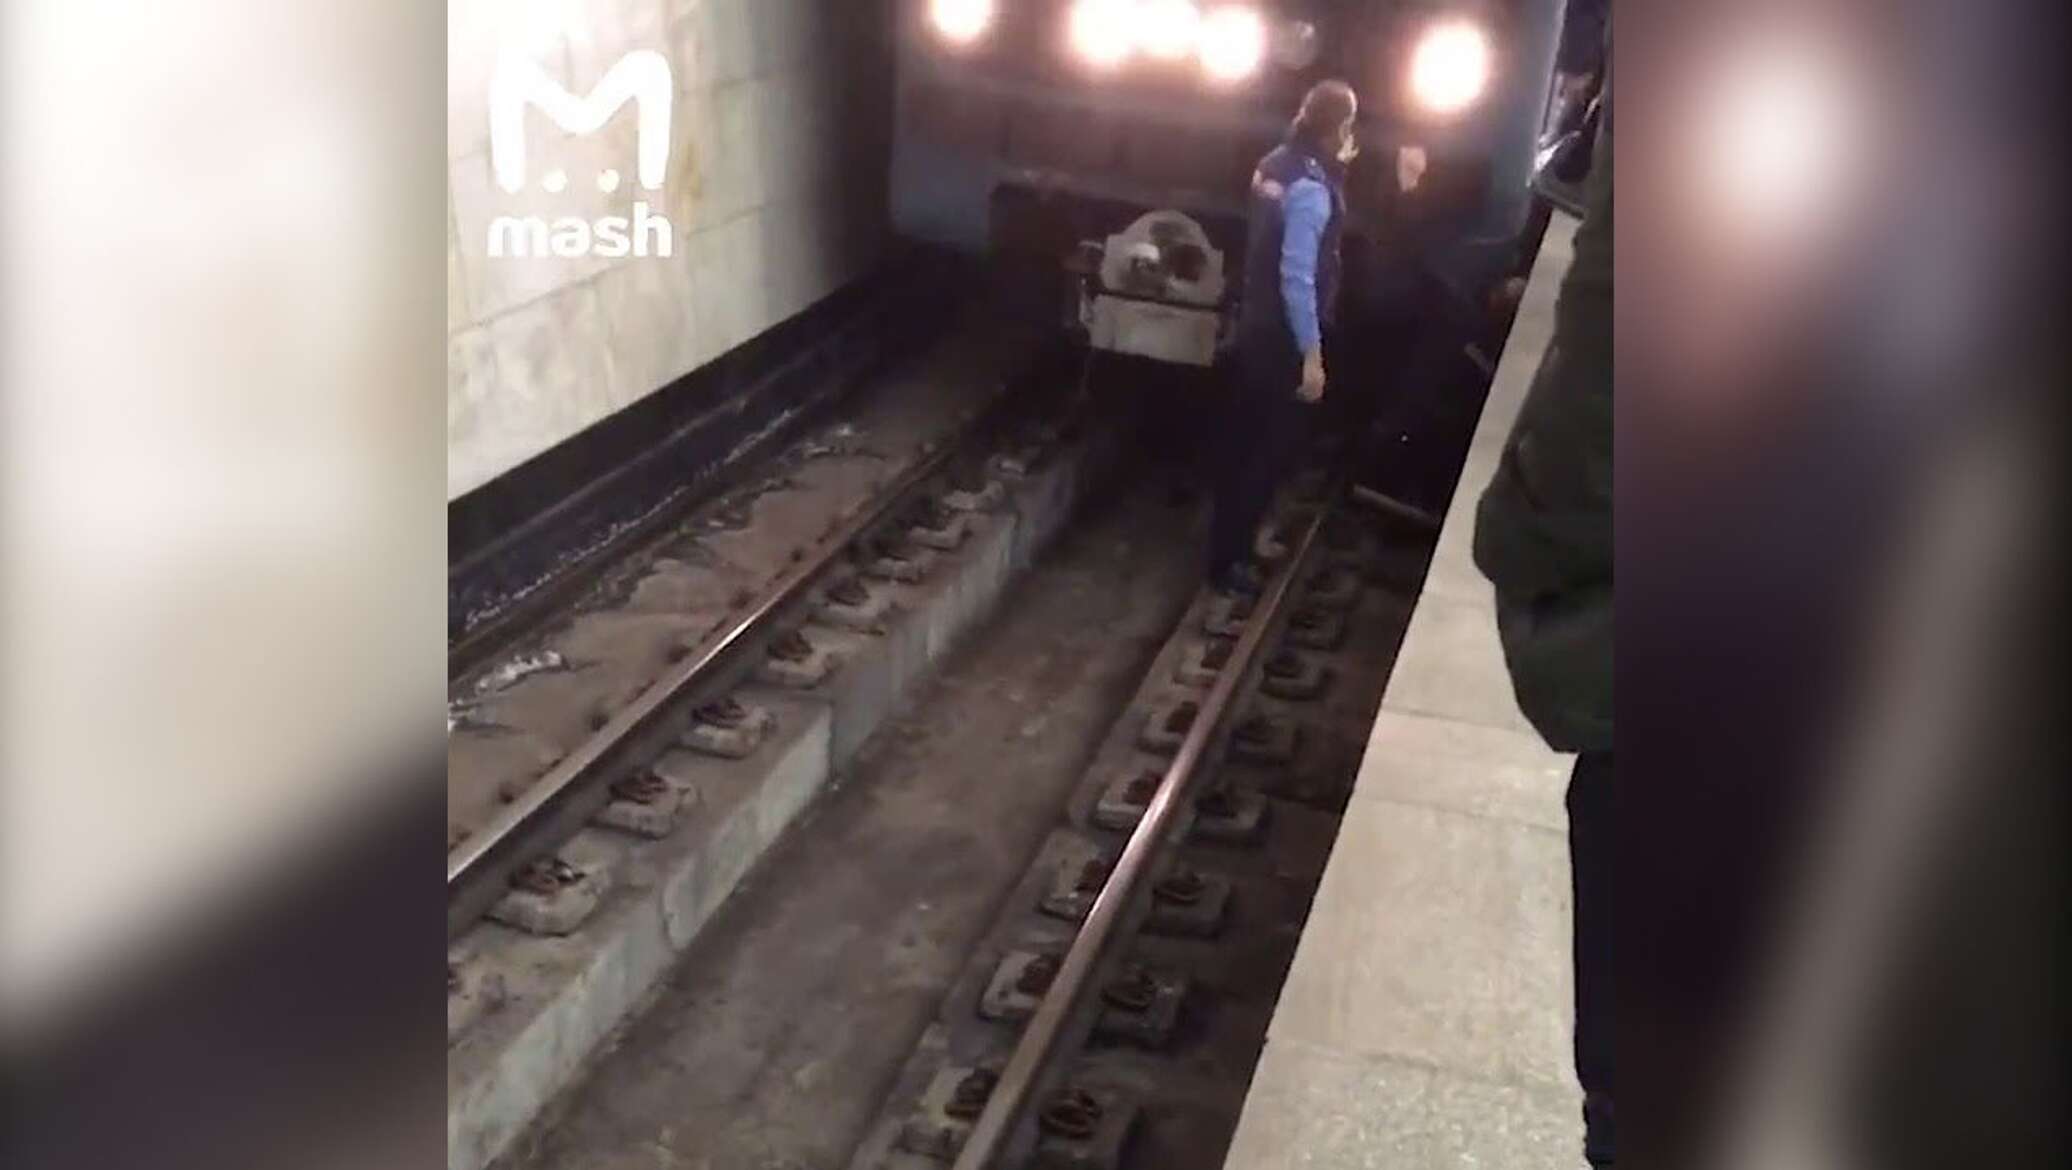 Электричка можно выйти раньше. Ребенок упал на рельсы в метро. Желоб между рельсами в метро.